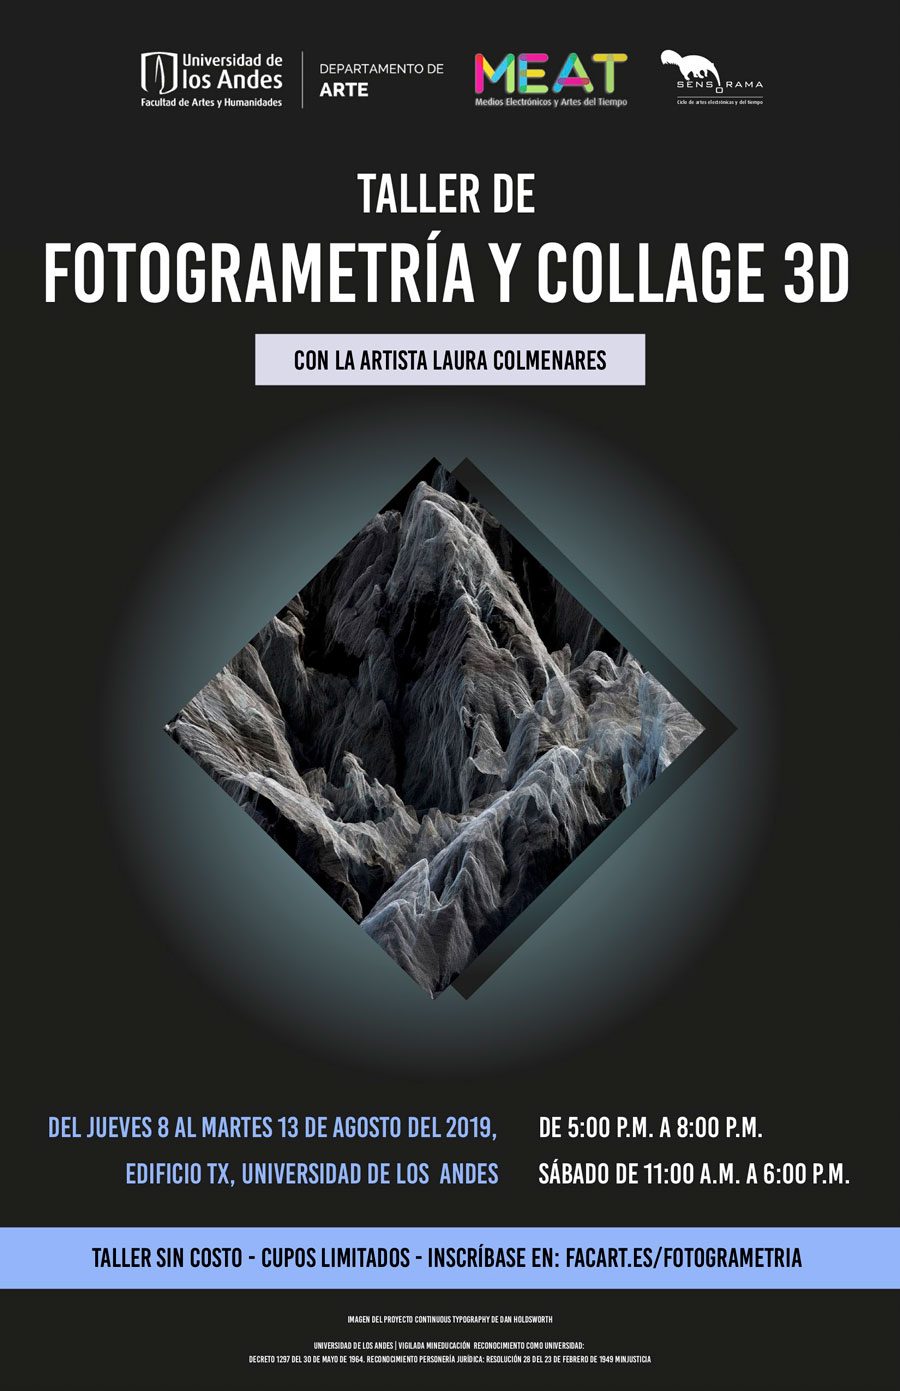 Taller de fotogrametría y collage 3D por la artista Laura Colmenares